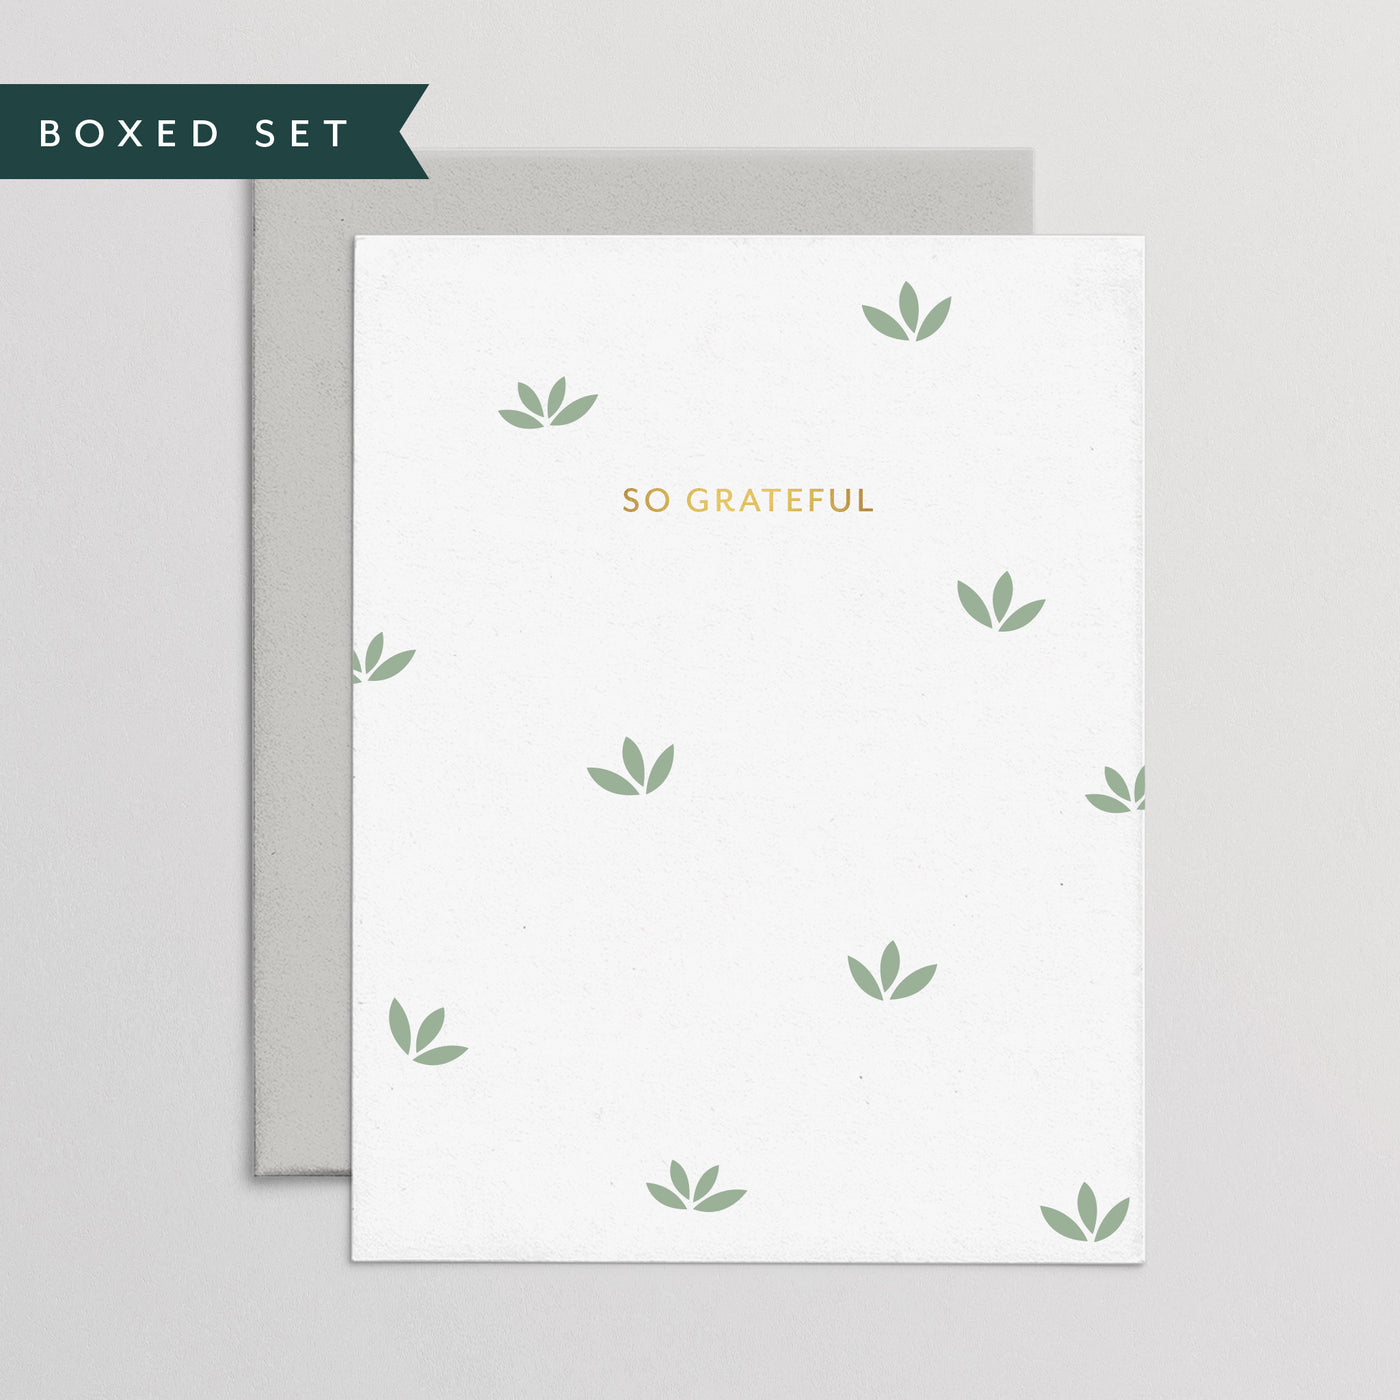 Patterned Grateful Boxed Set